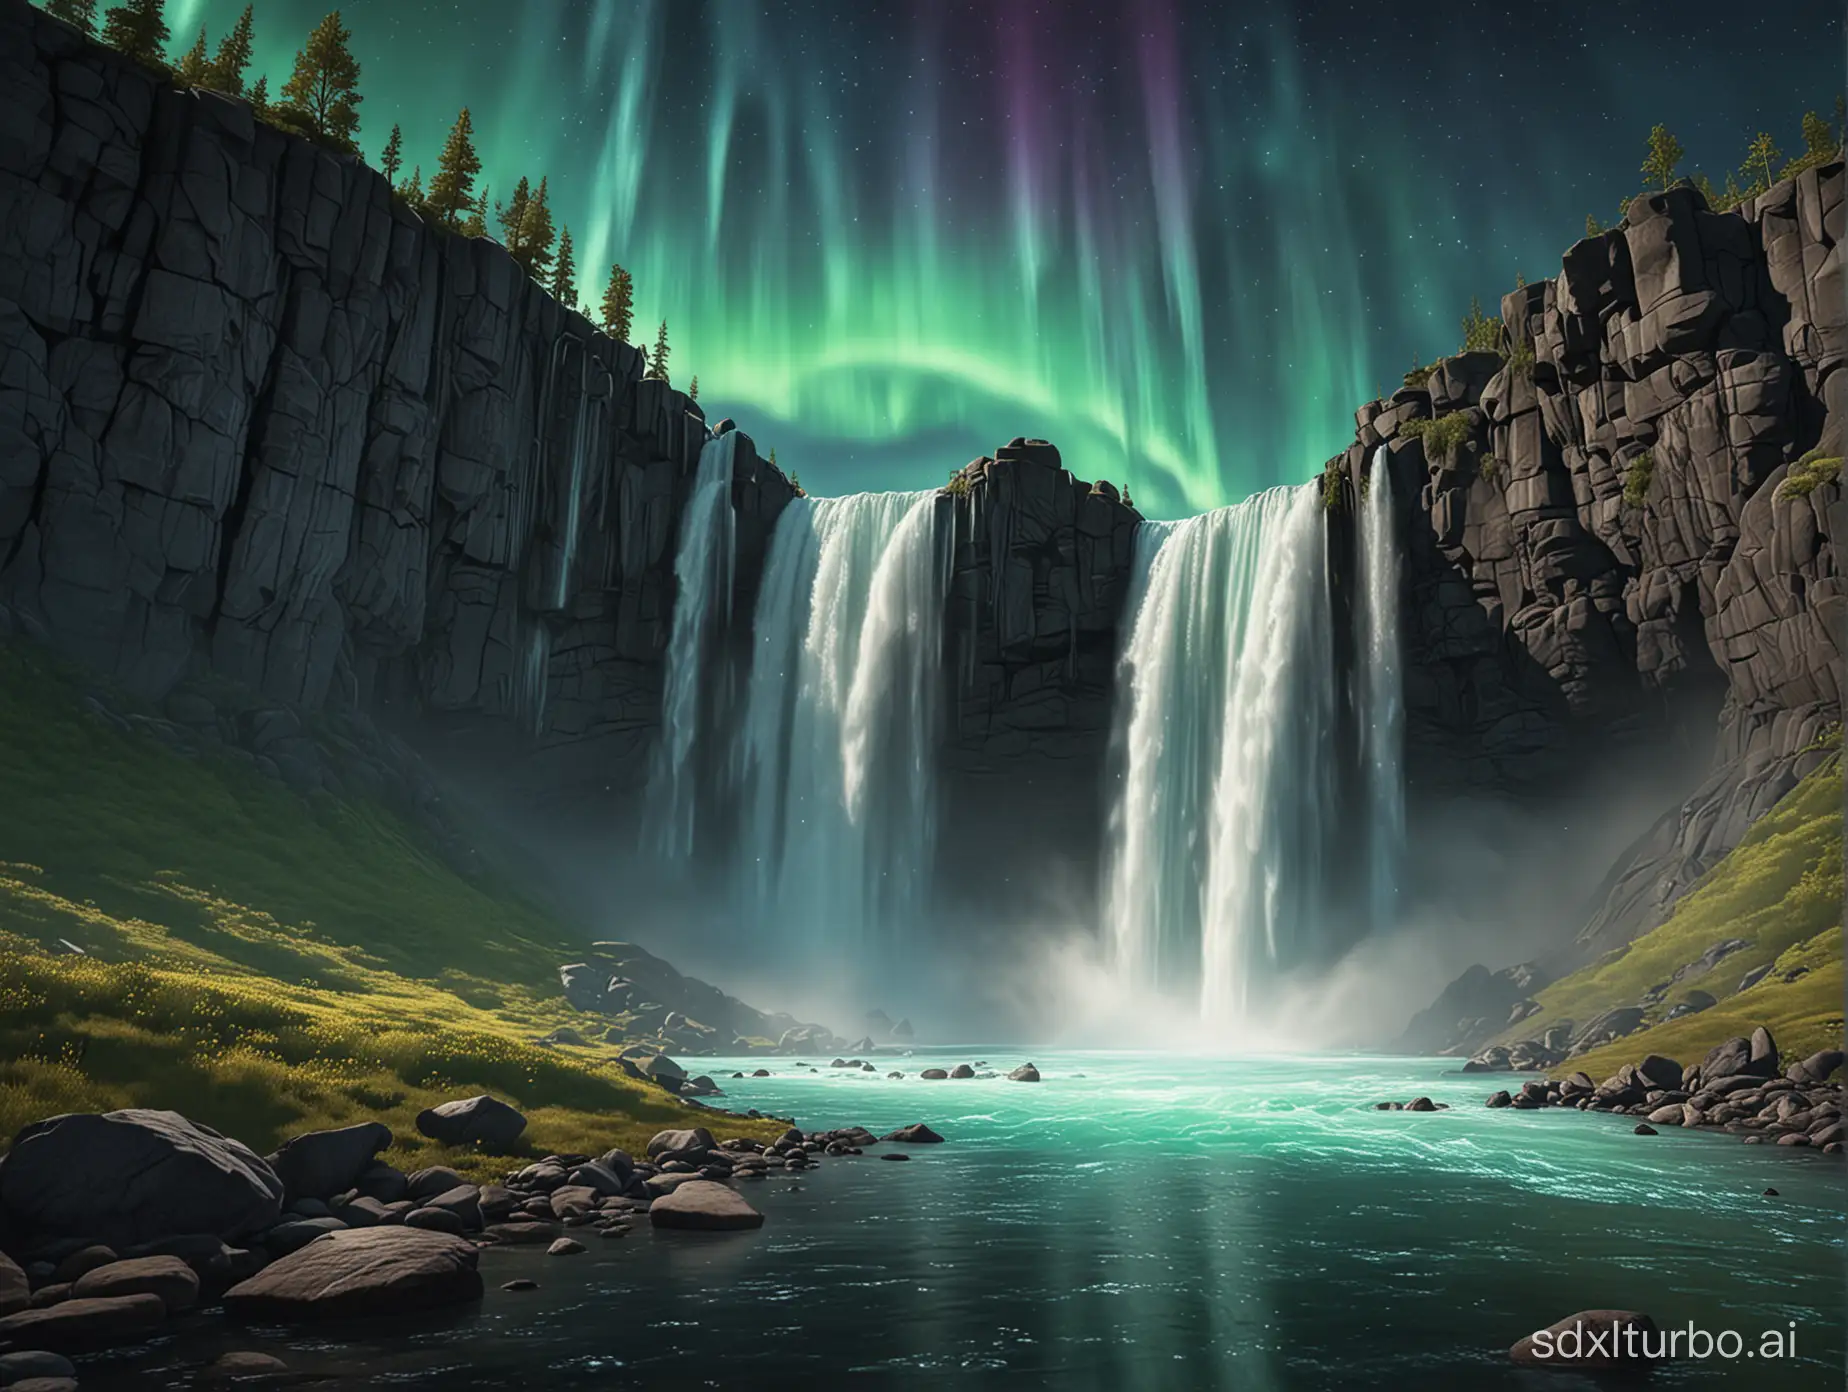 Enchanting-Waterfall-Illuminated-by-Aurora-Borealis